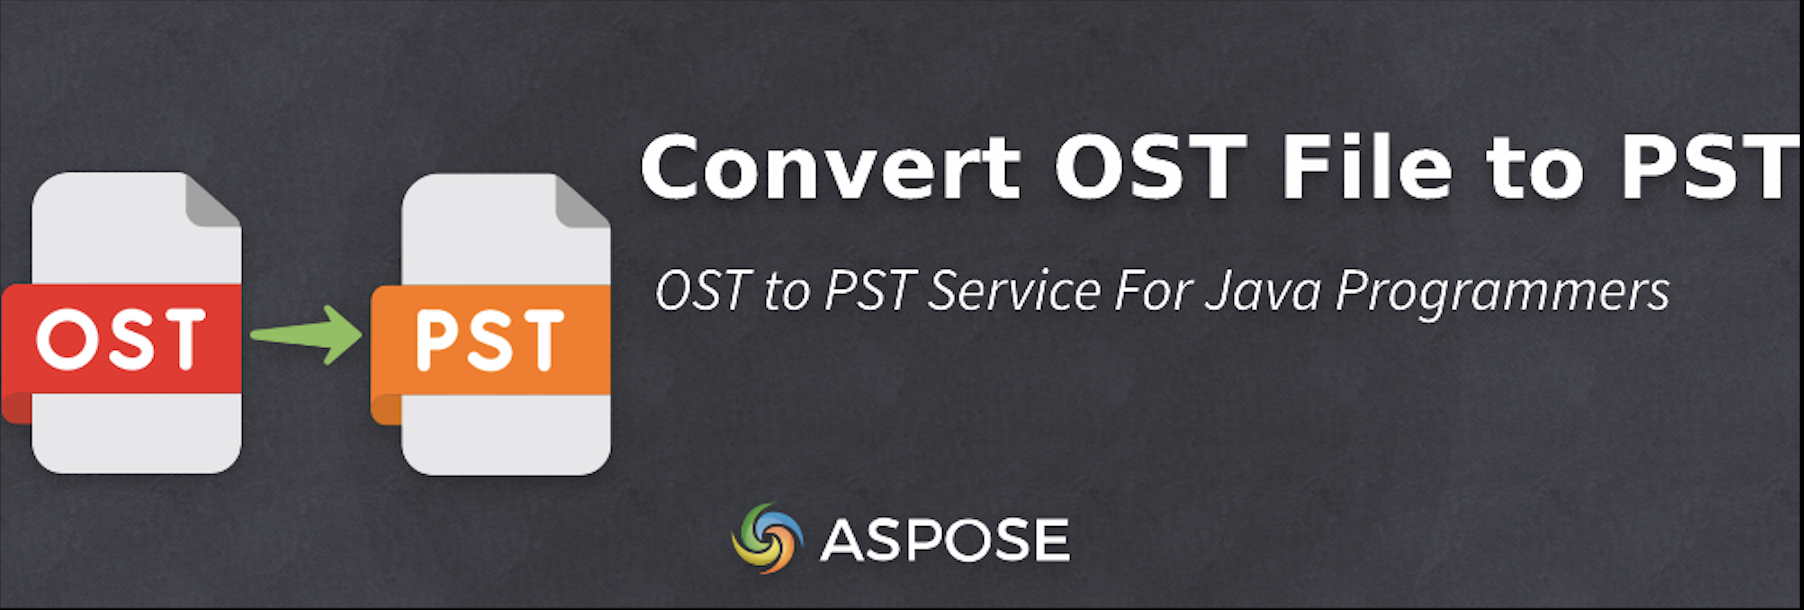 Конвертируйте файлы OST в PST на Java — бесплатный конвертер OST в PST